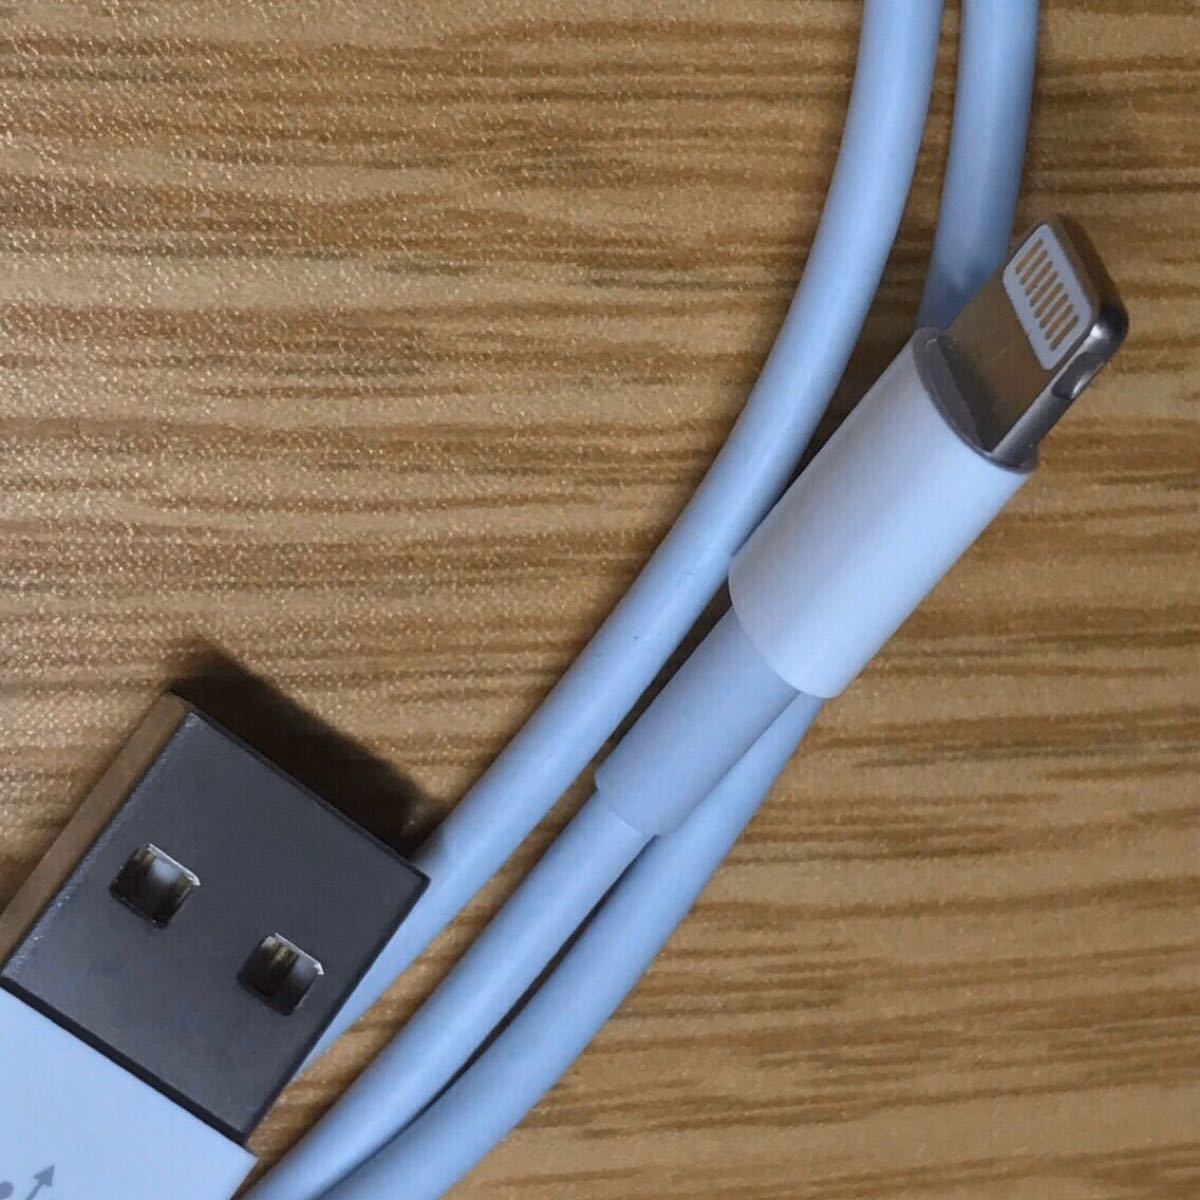 iPhone 充電器 充電ケーブル コード lightning cable ライトニングケーブルアダプタ コンセント USB